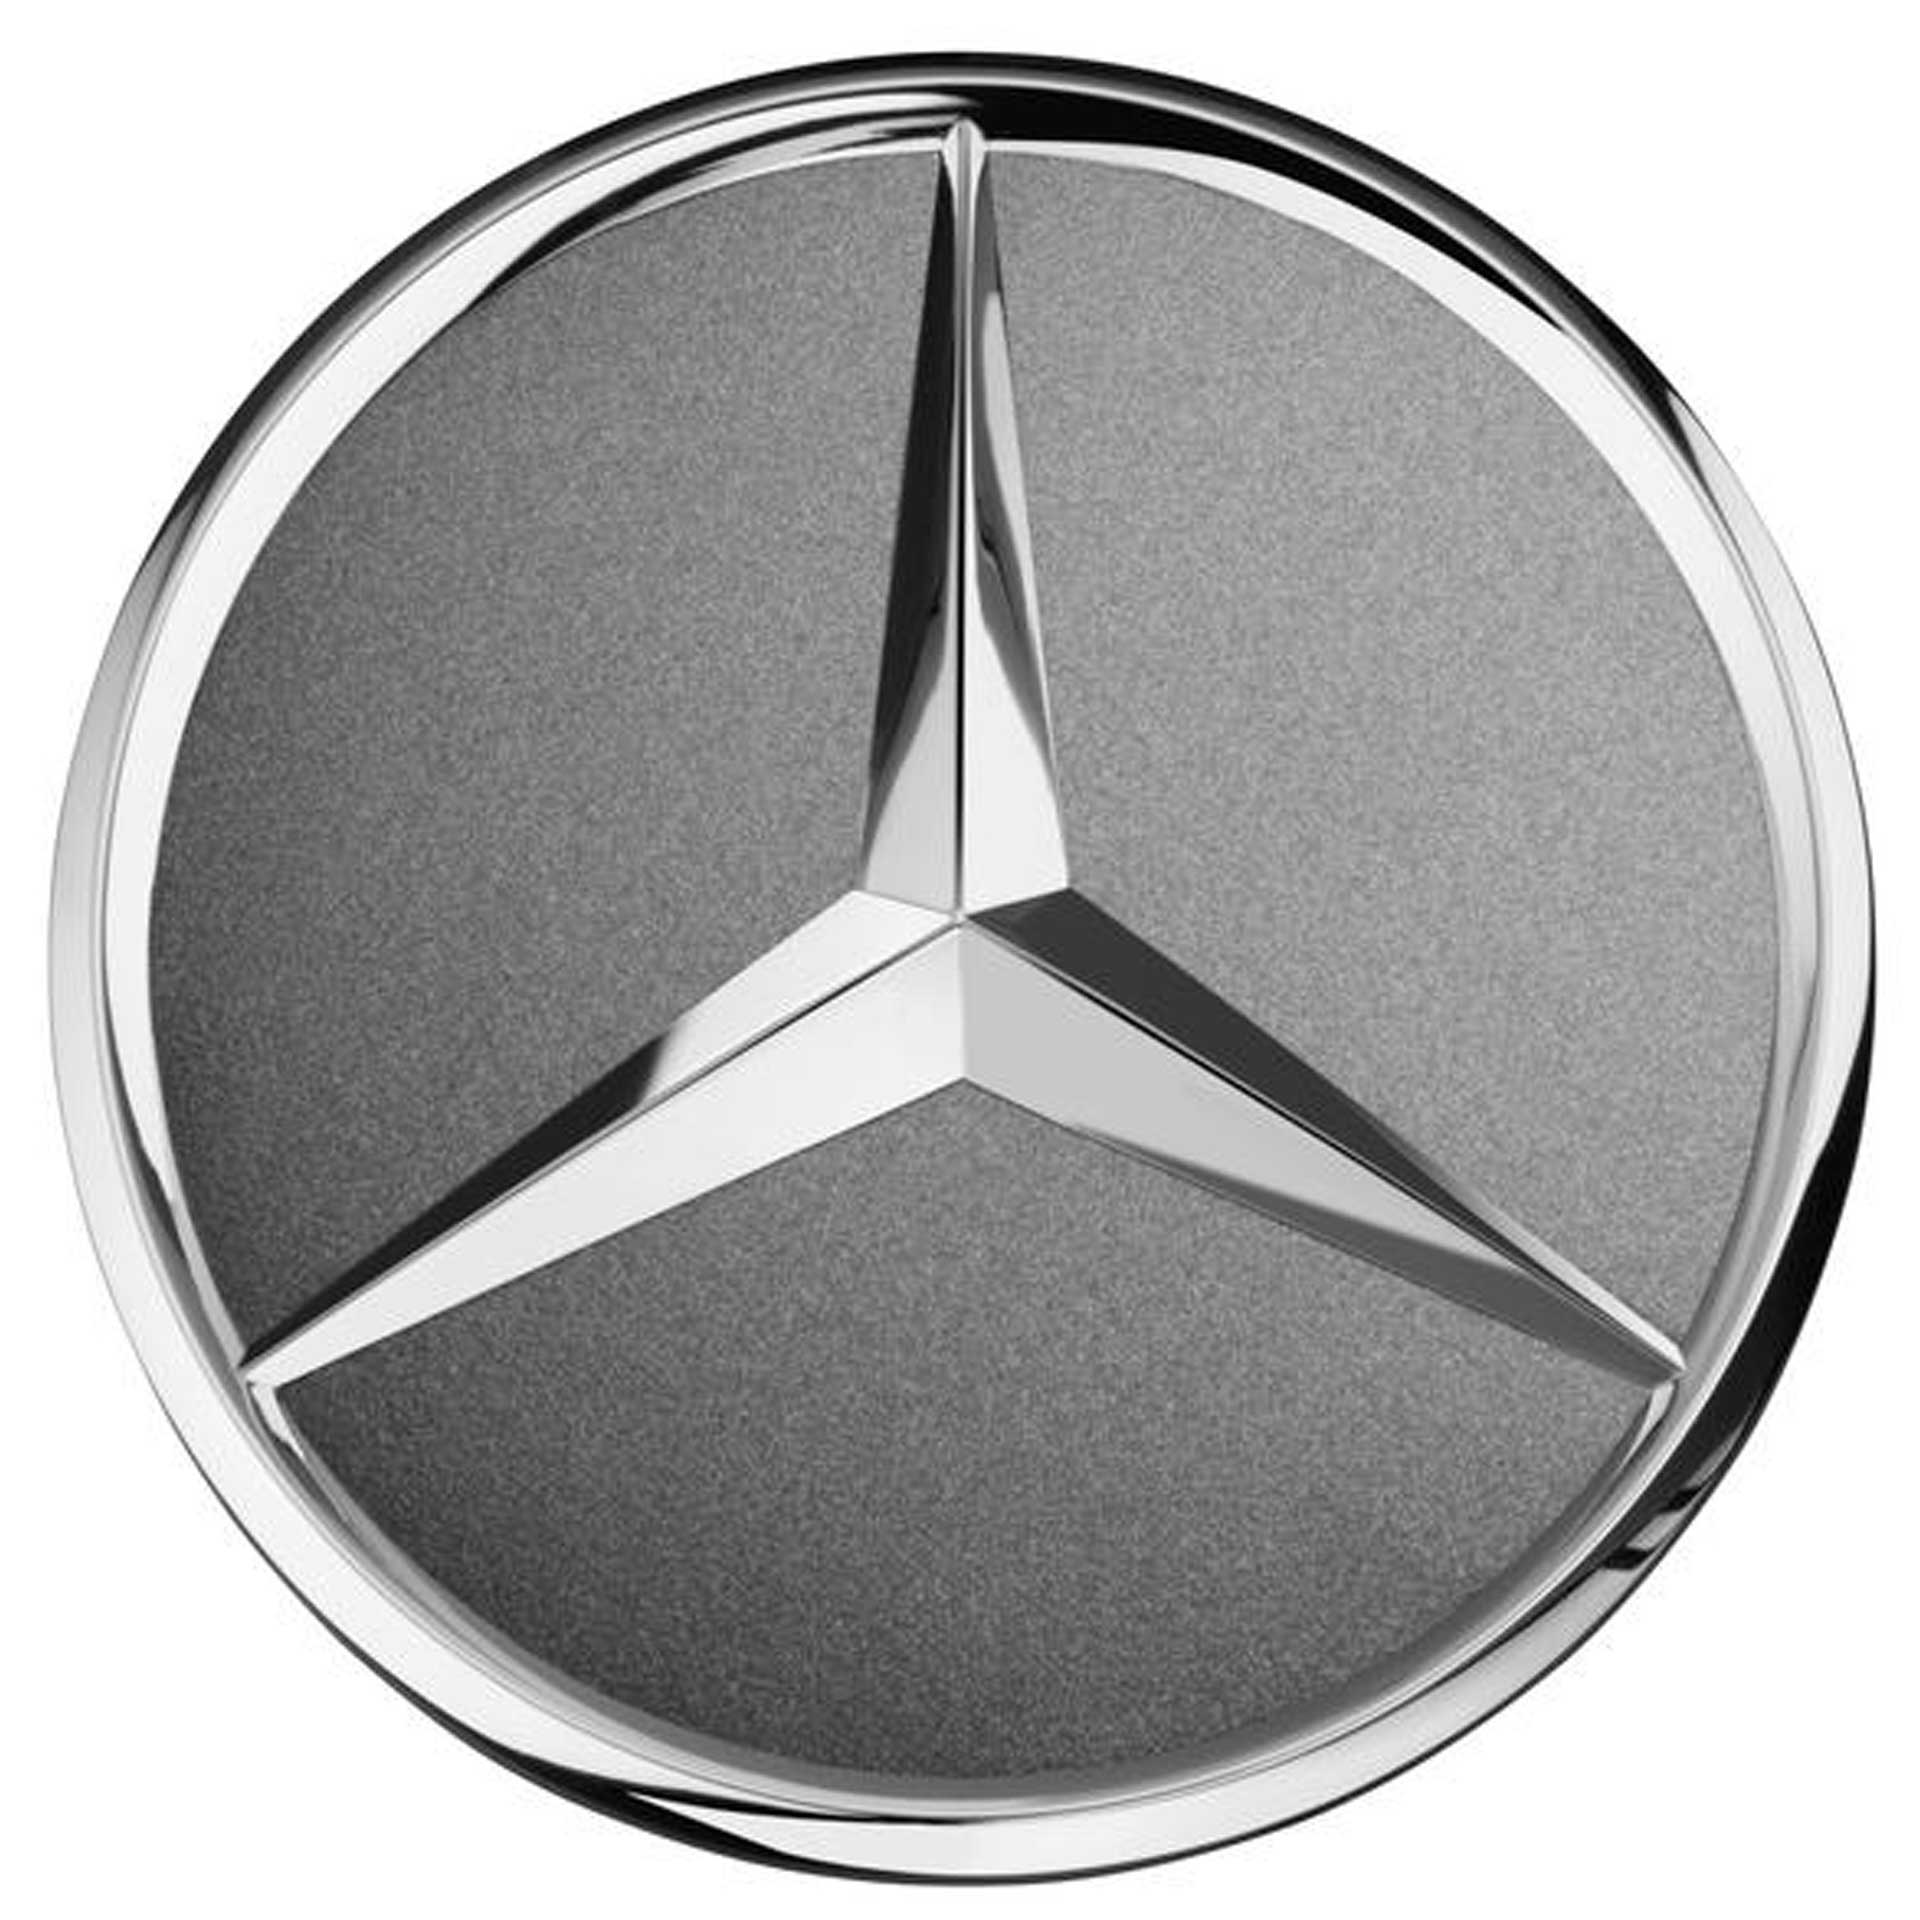 Mercedes-Benz Radnabenabdeckung Stern tantalgrau